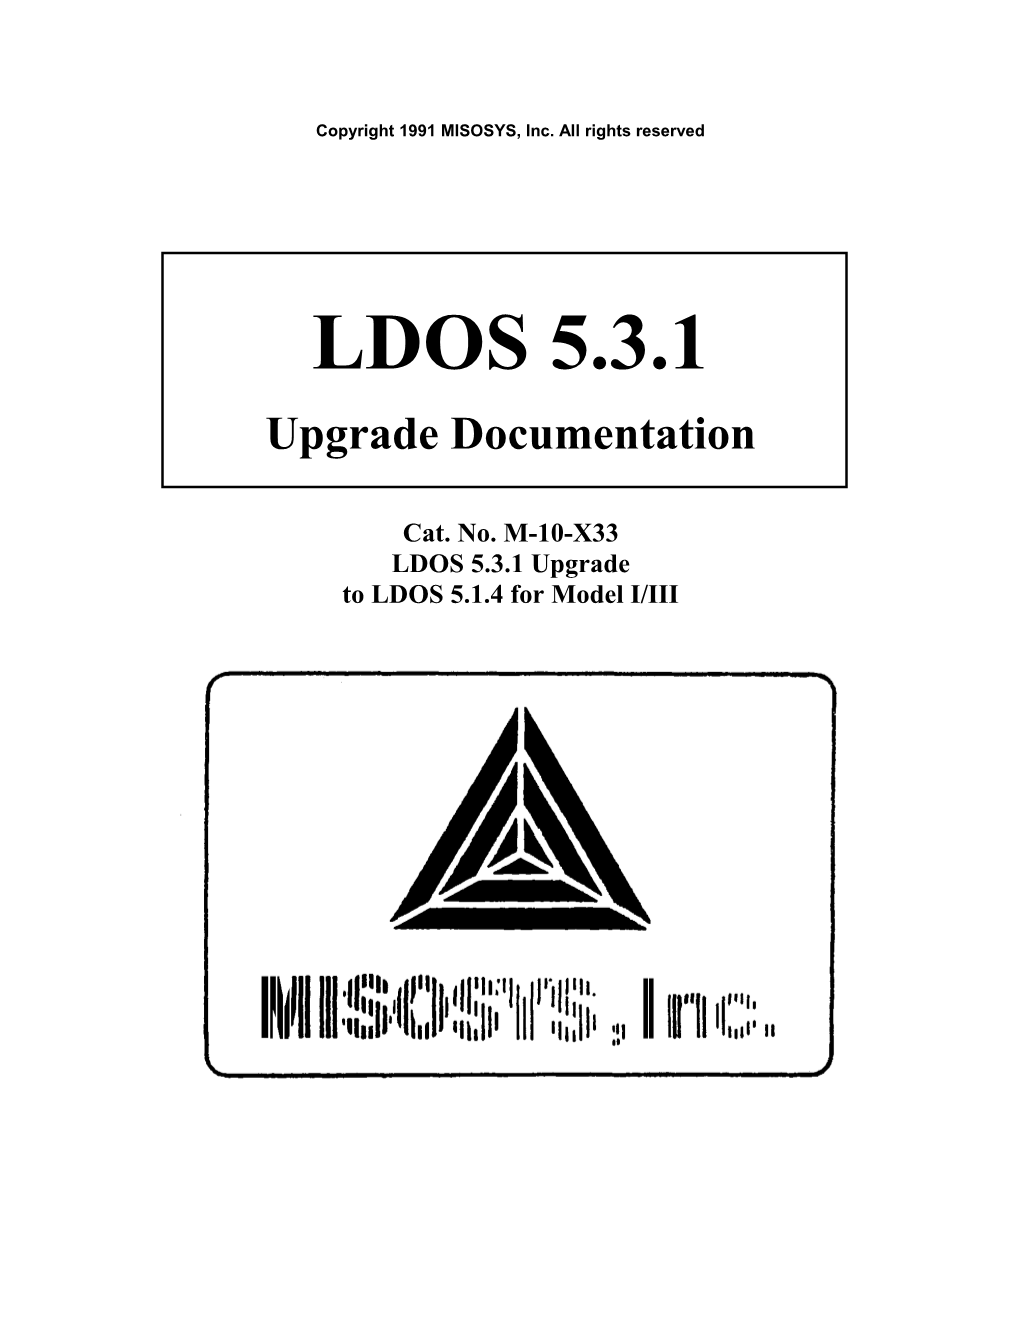 LDOS 5.3.1 Update Booklet